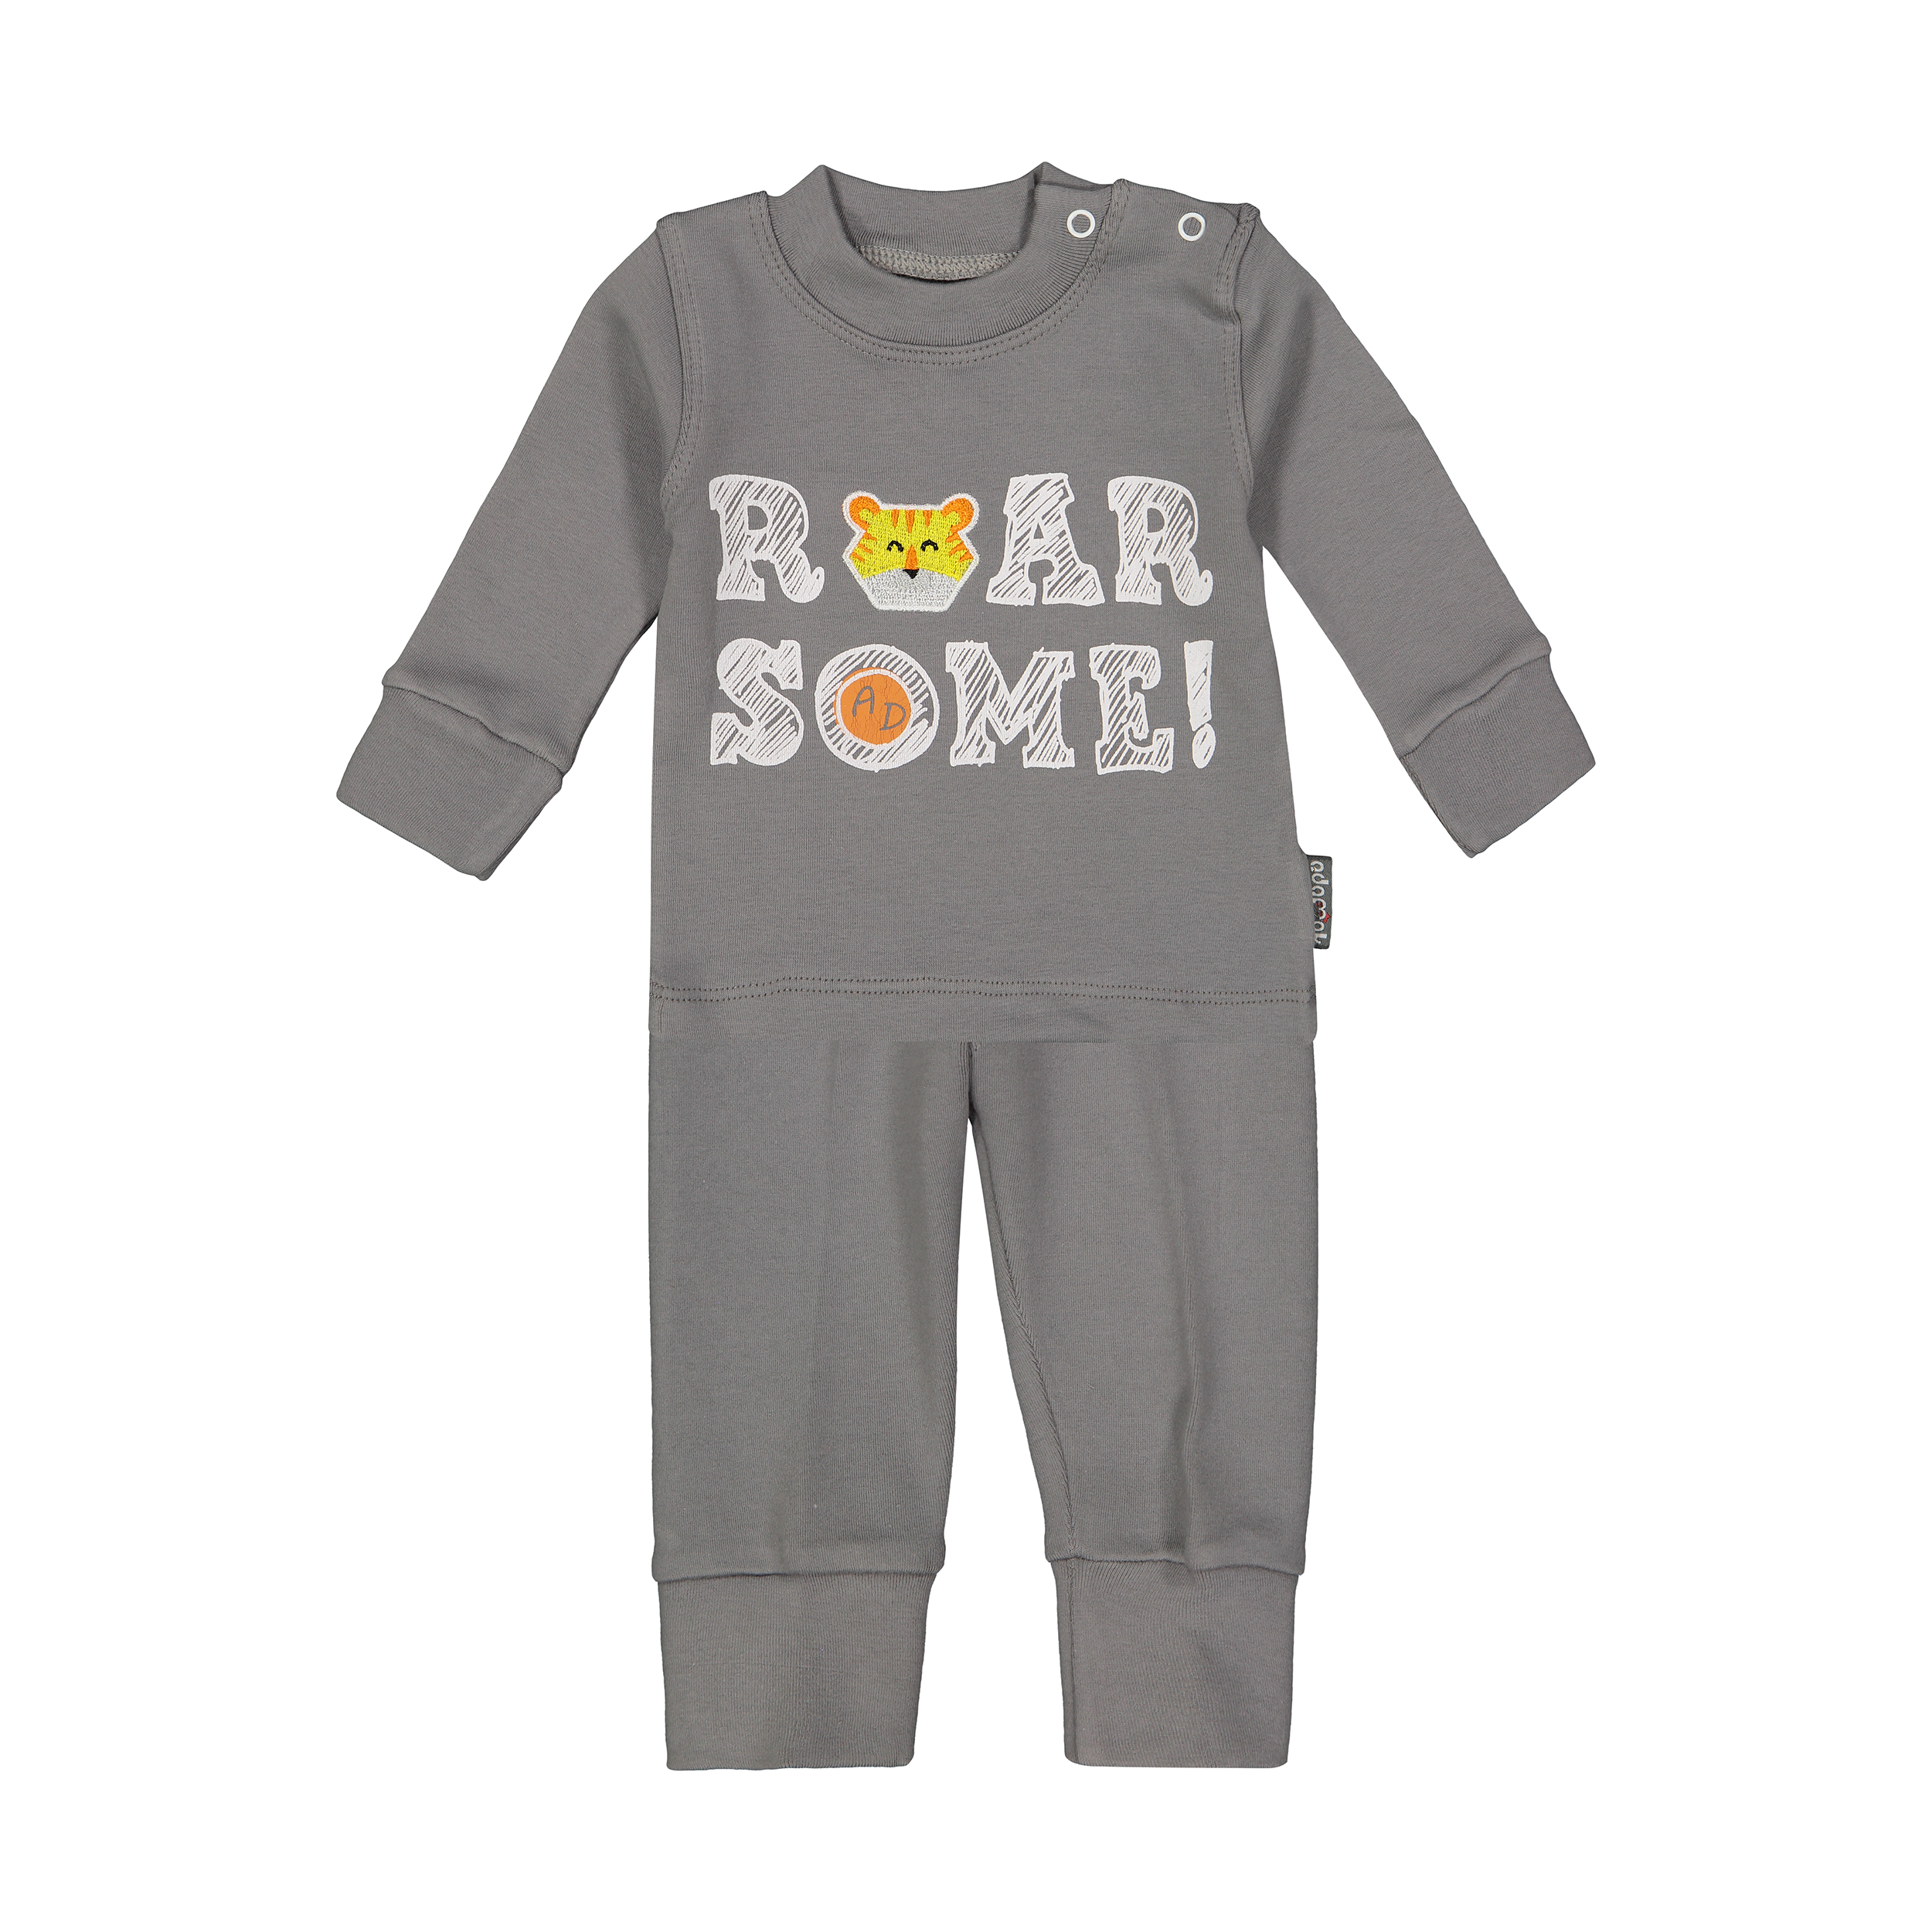 ست تی شرت و شلوار نوزادی پسرانه آدمک مدل 2171123-93 -  - 1